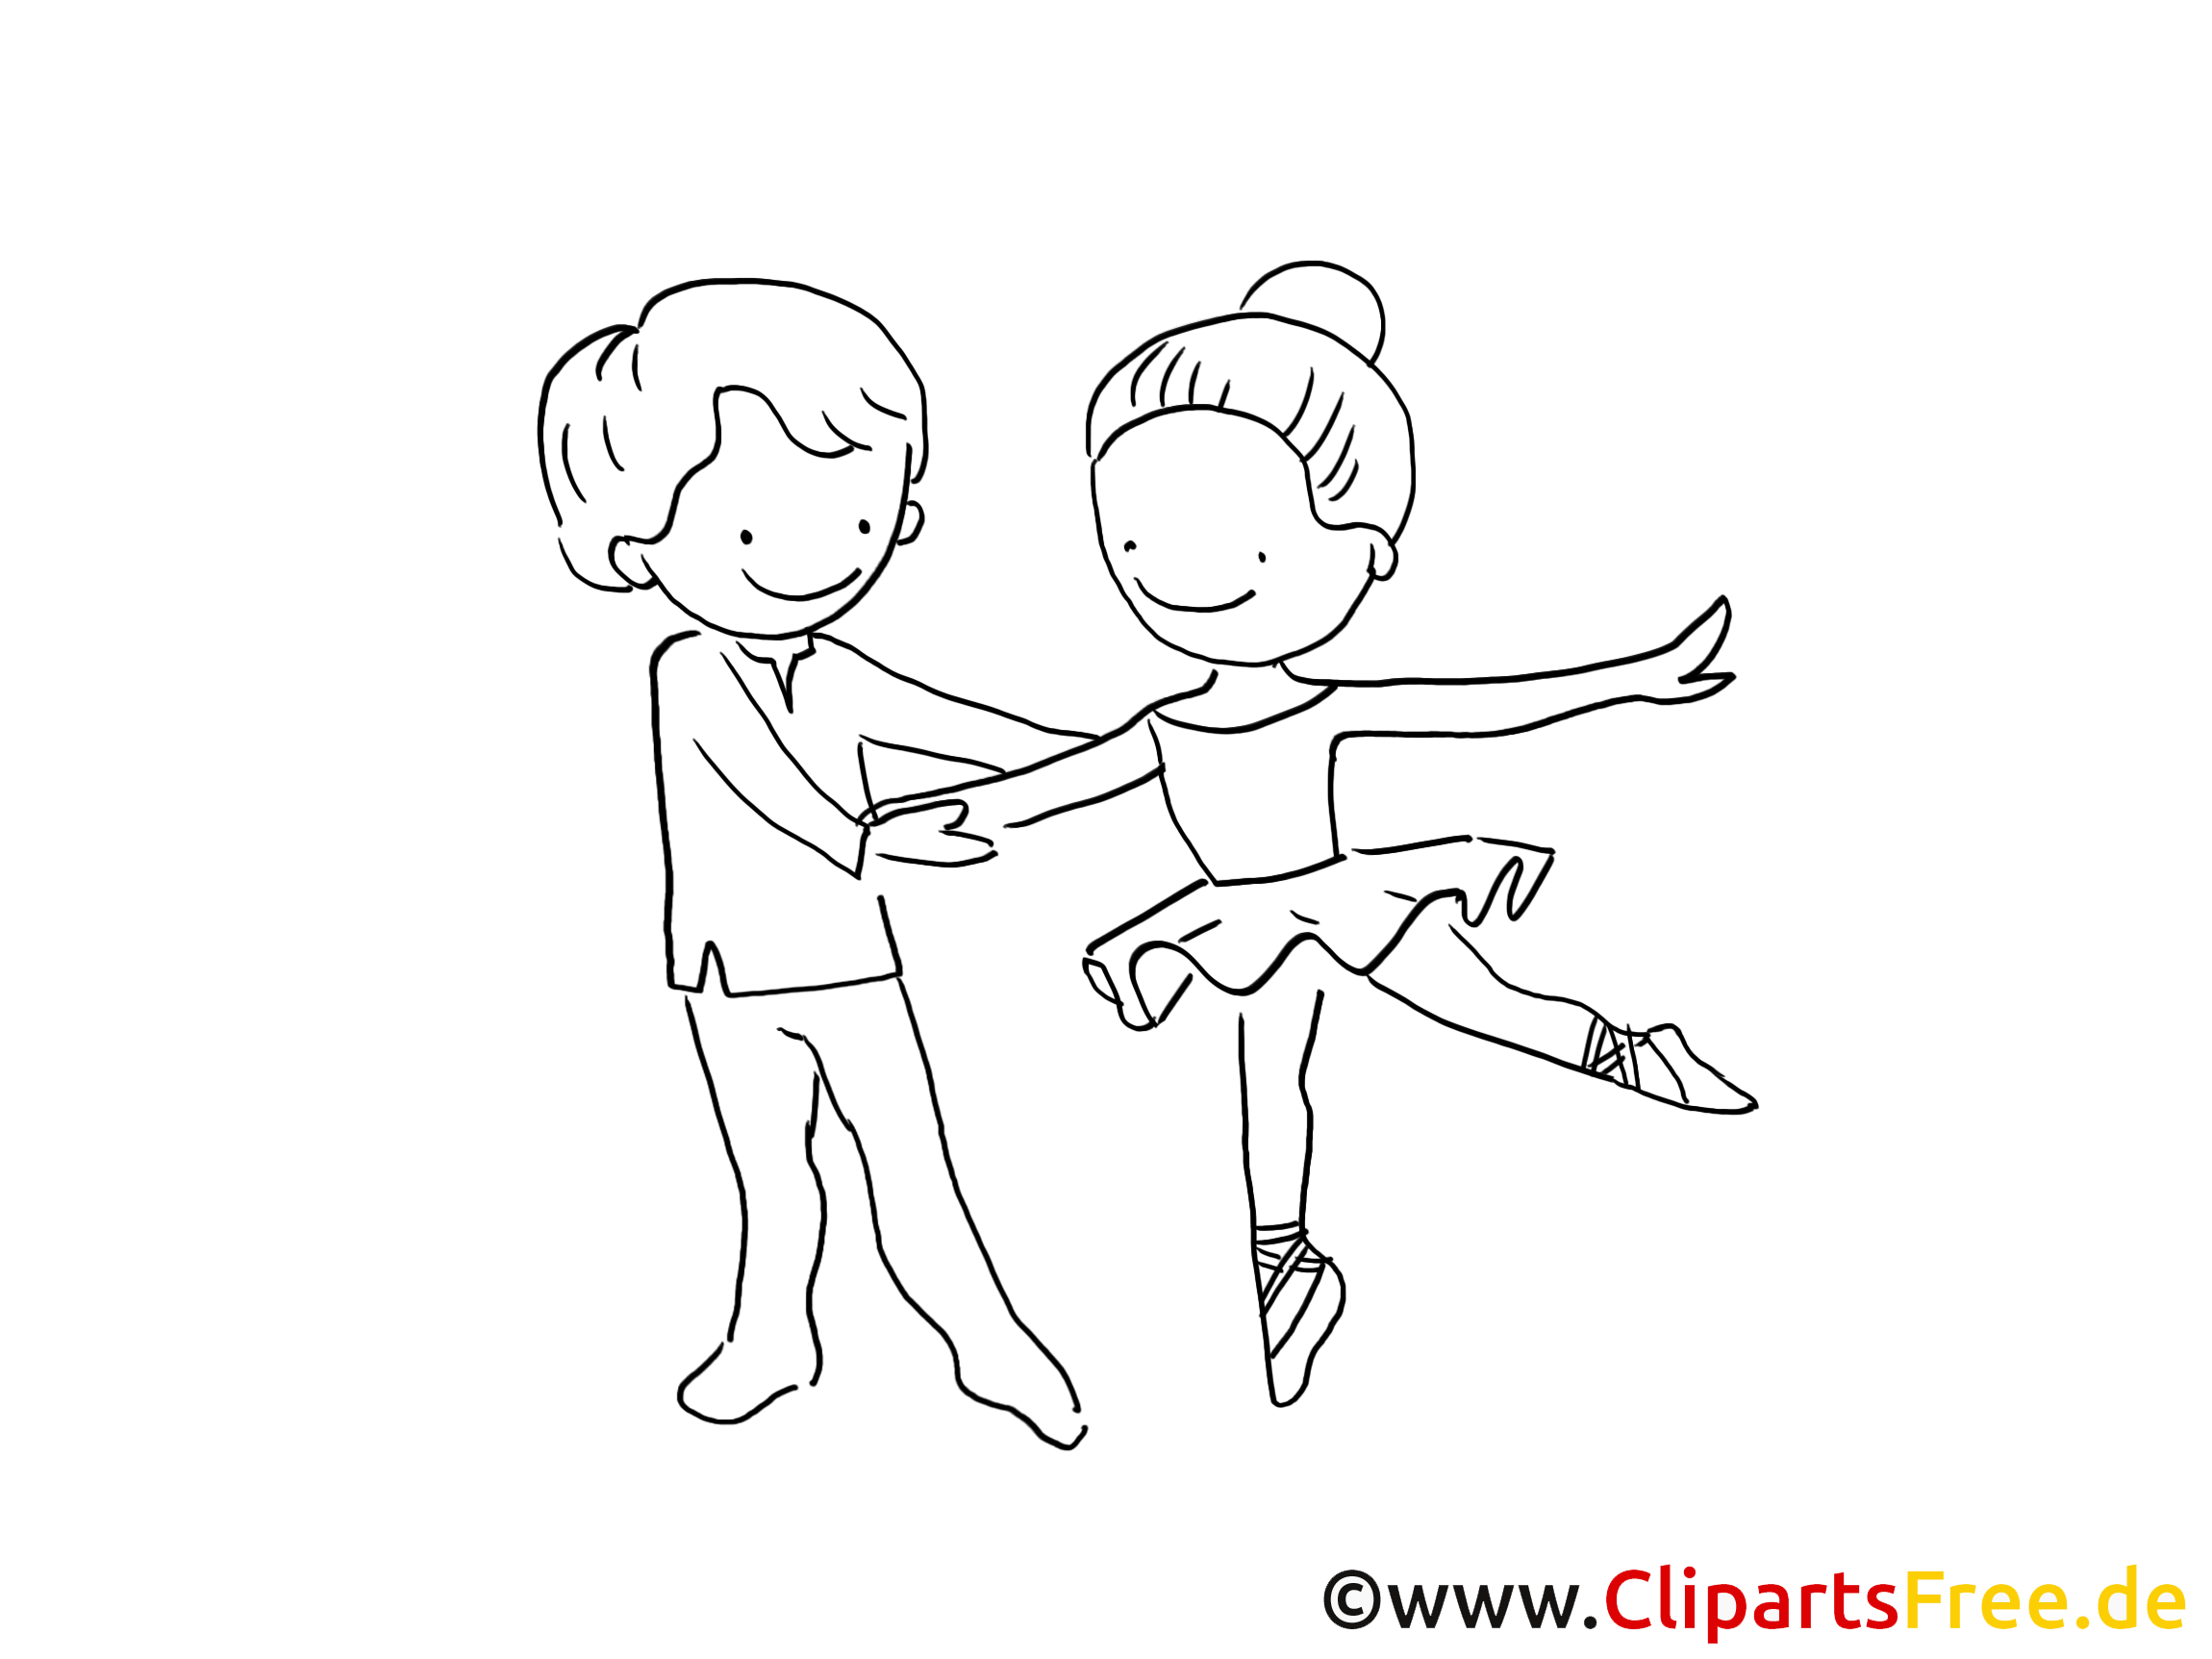 Ballet clip art gratuit – Cartoons à colorier